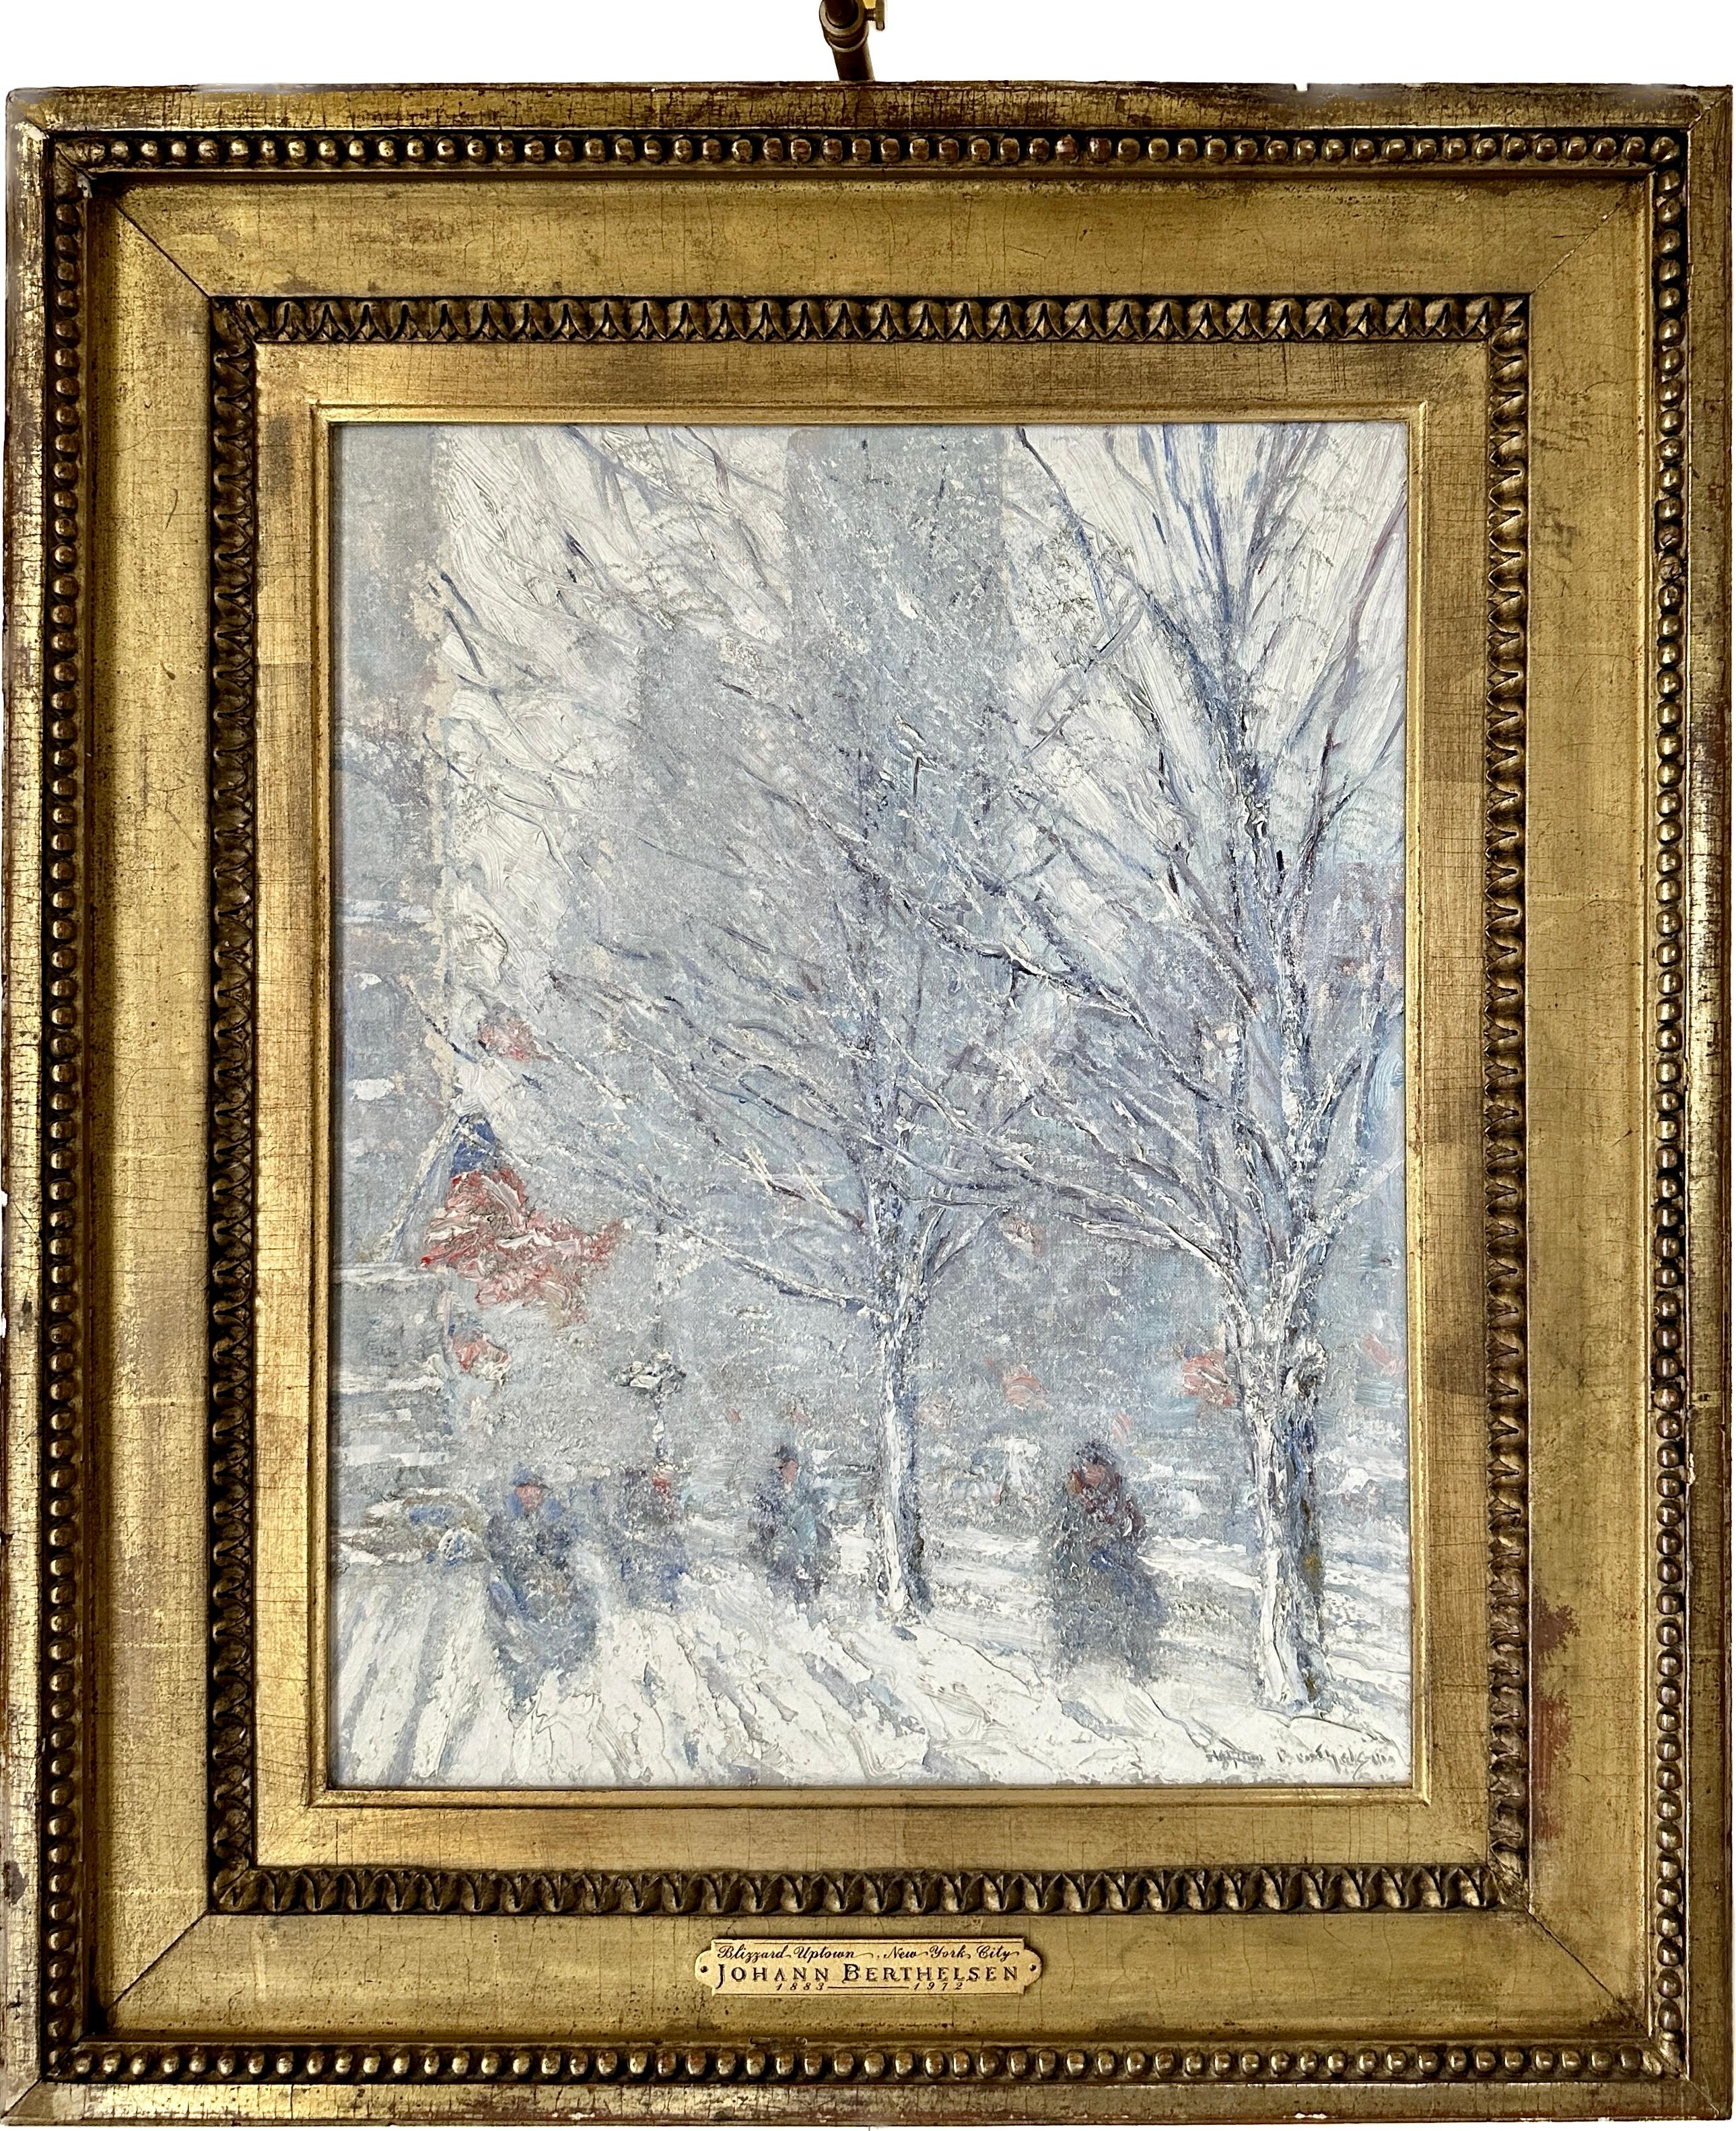 Blizzard Uptown, New York - Painting de Johann Berthelsen